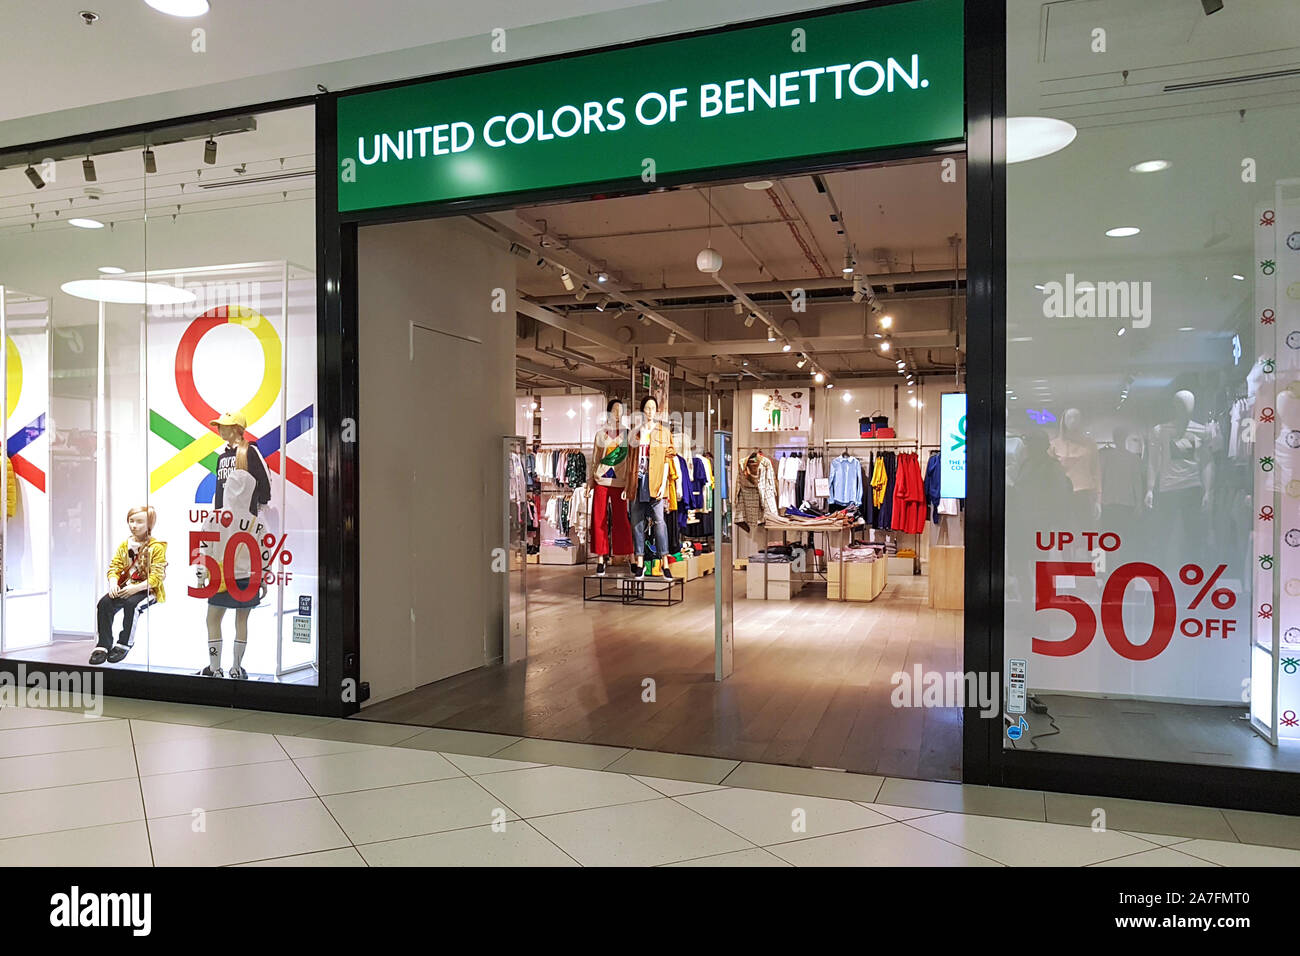 Gdynia, Pologne - 13 août 2019 : vue extérieure de la United Colors of Benetton Store. Benetton Group est une marque de mode internationale basée en Italie Banque D'Images